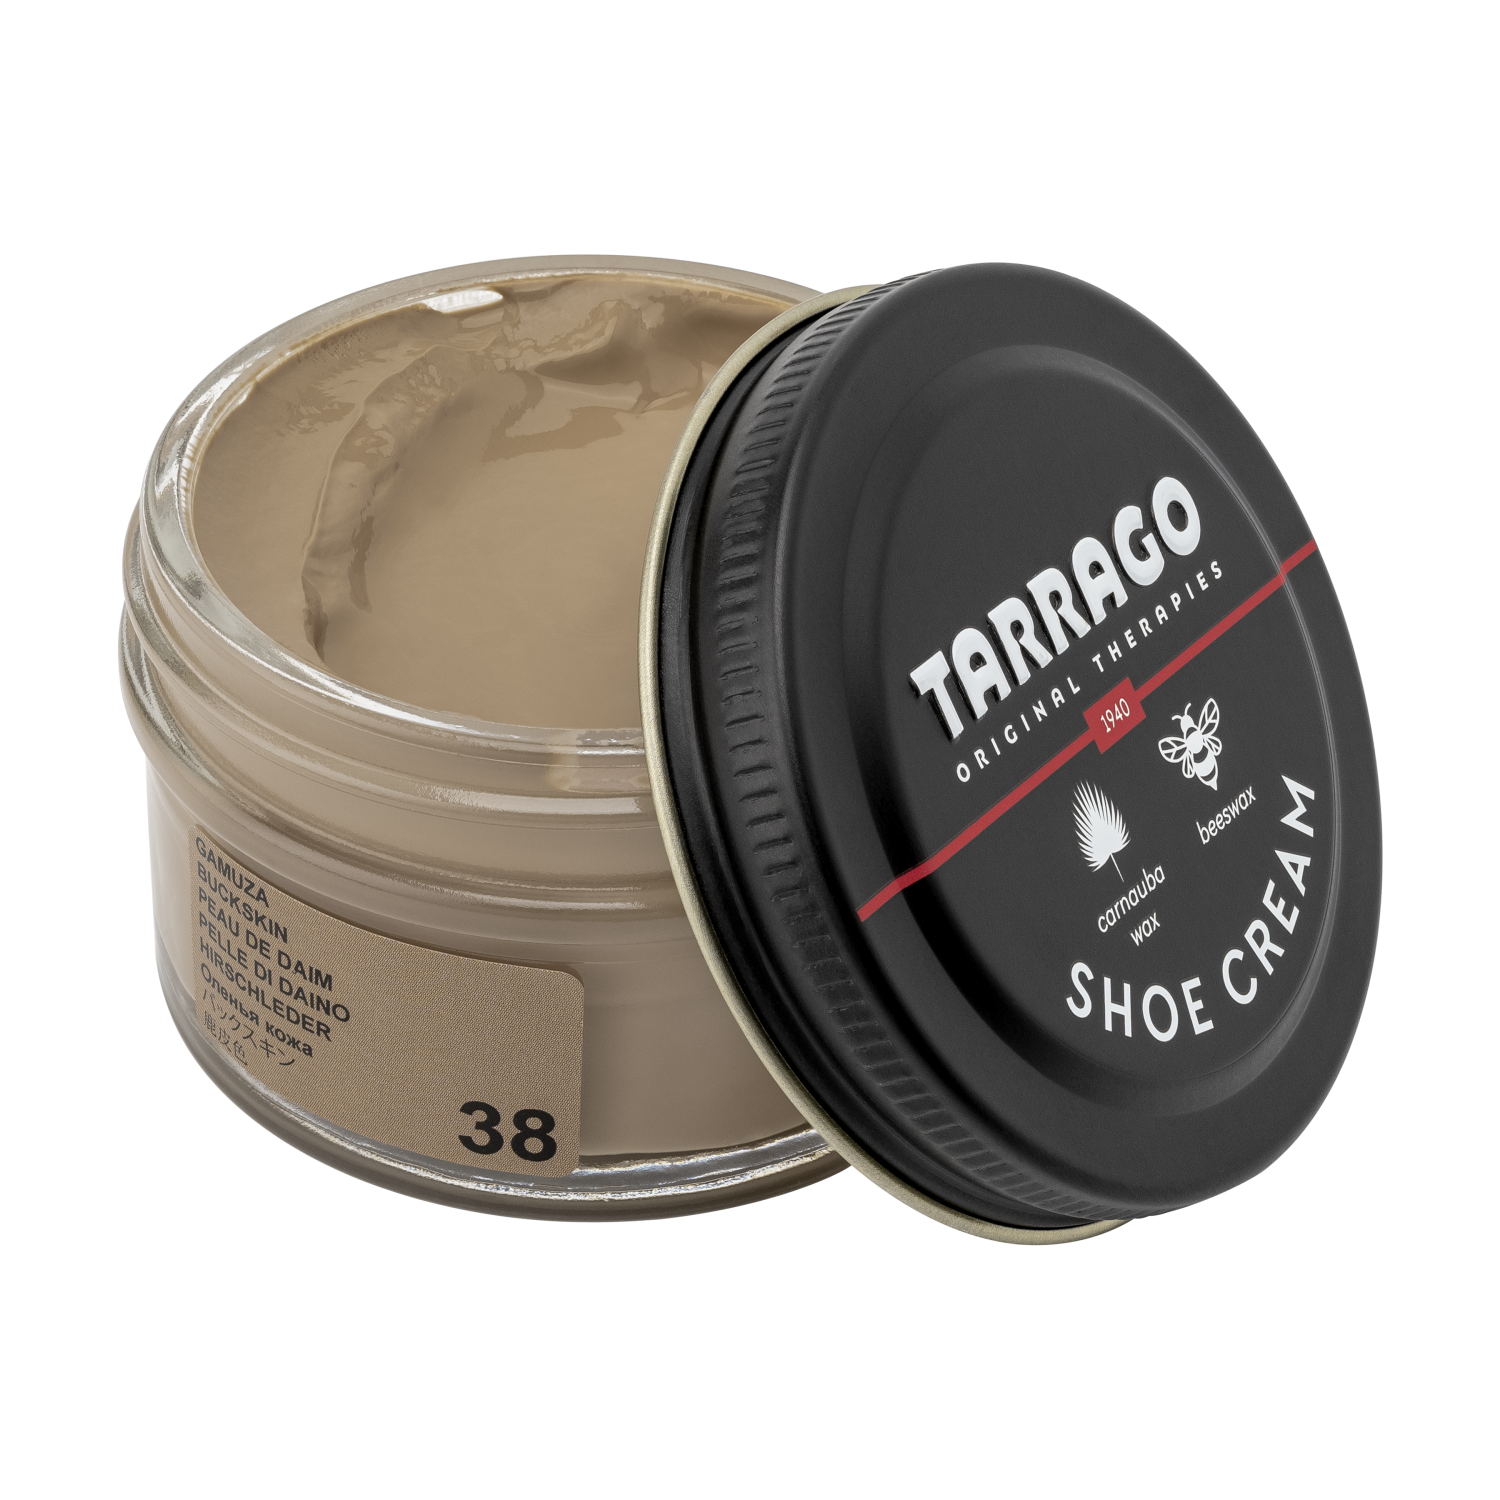 Tarrago Shoe Cream